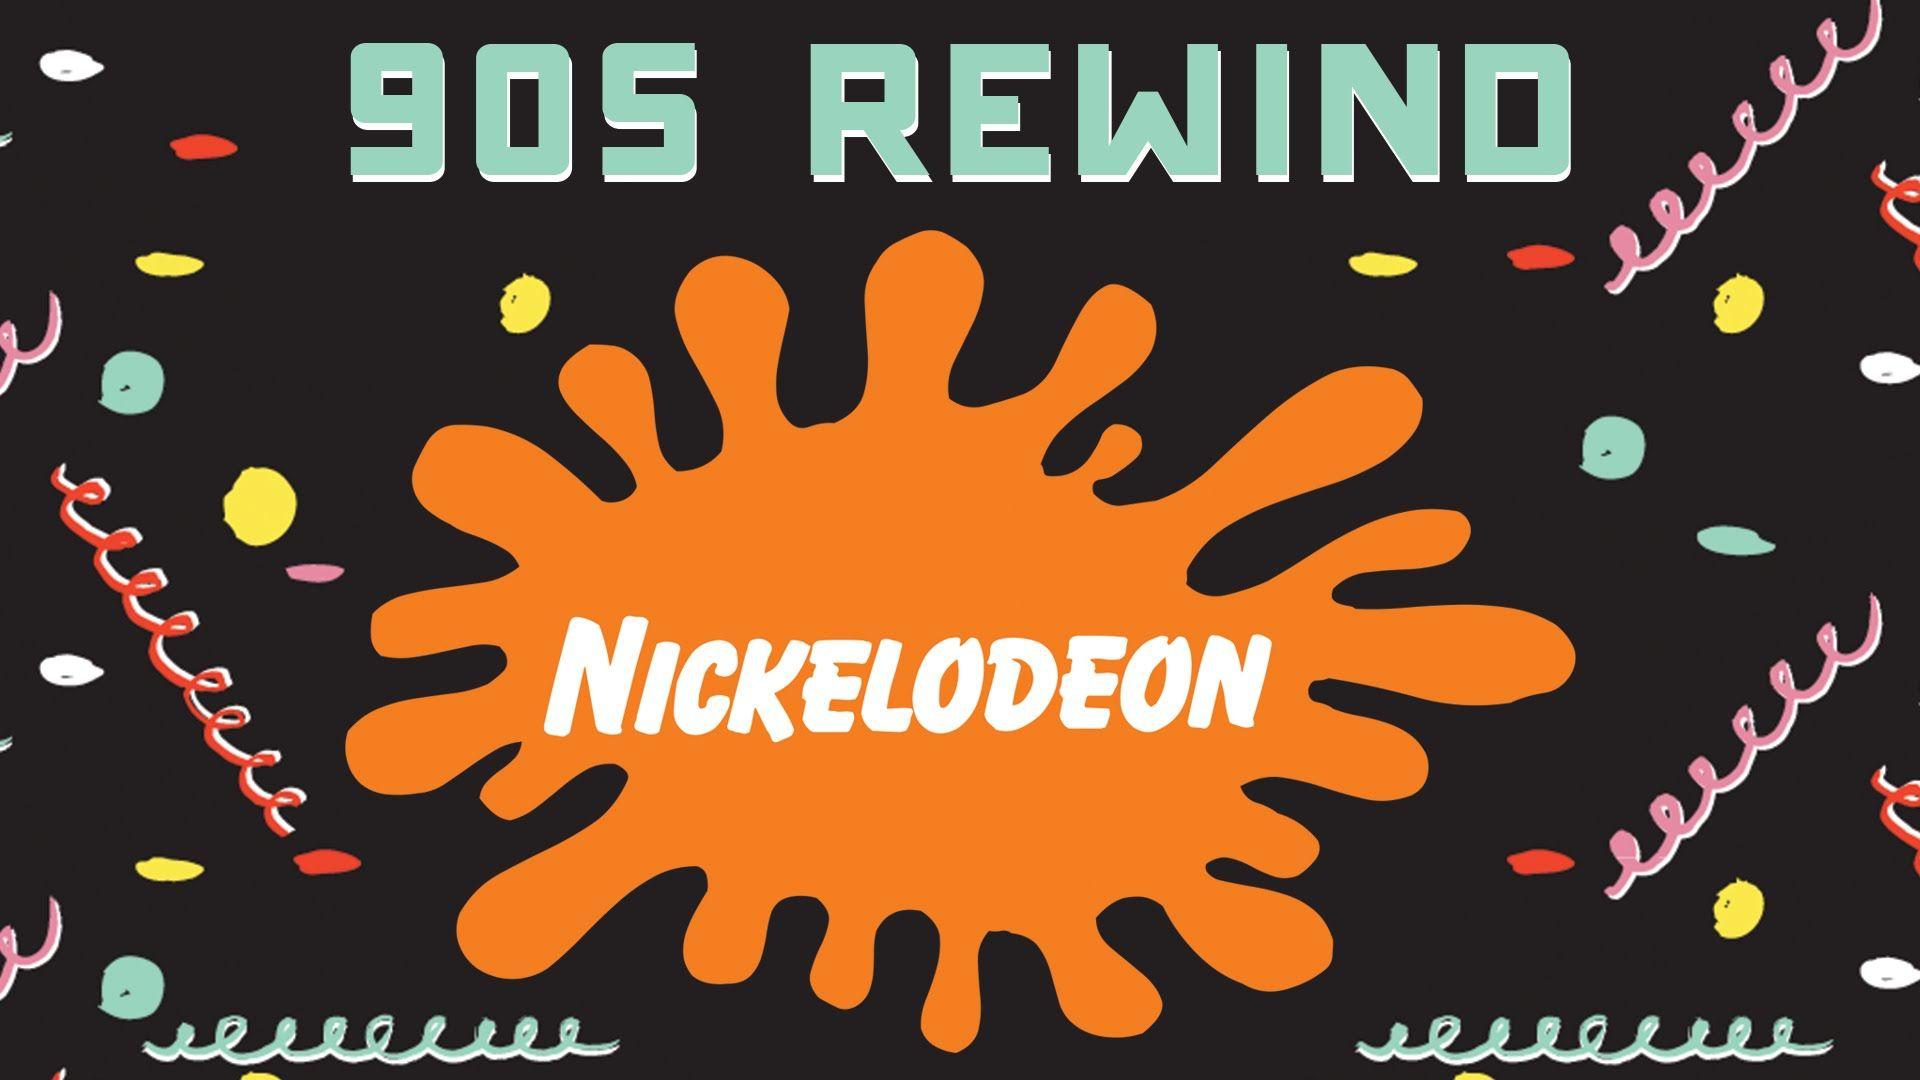 Nickelodeon Snick. Nickelodeon заставка реклама. Nickelodeon Quiz. Nickelodeon наклейки. Nick show